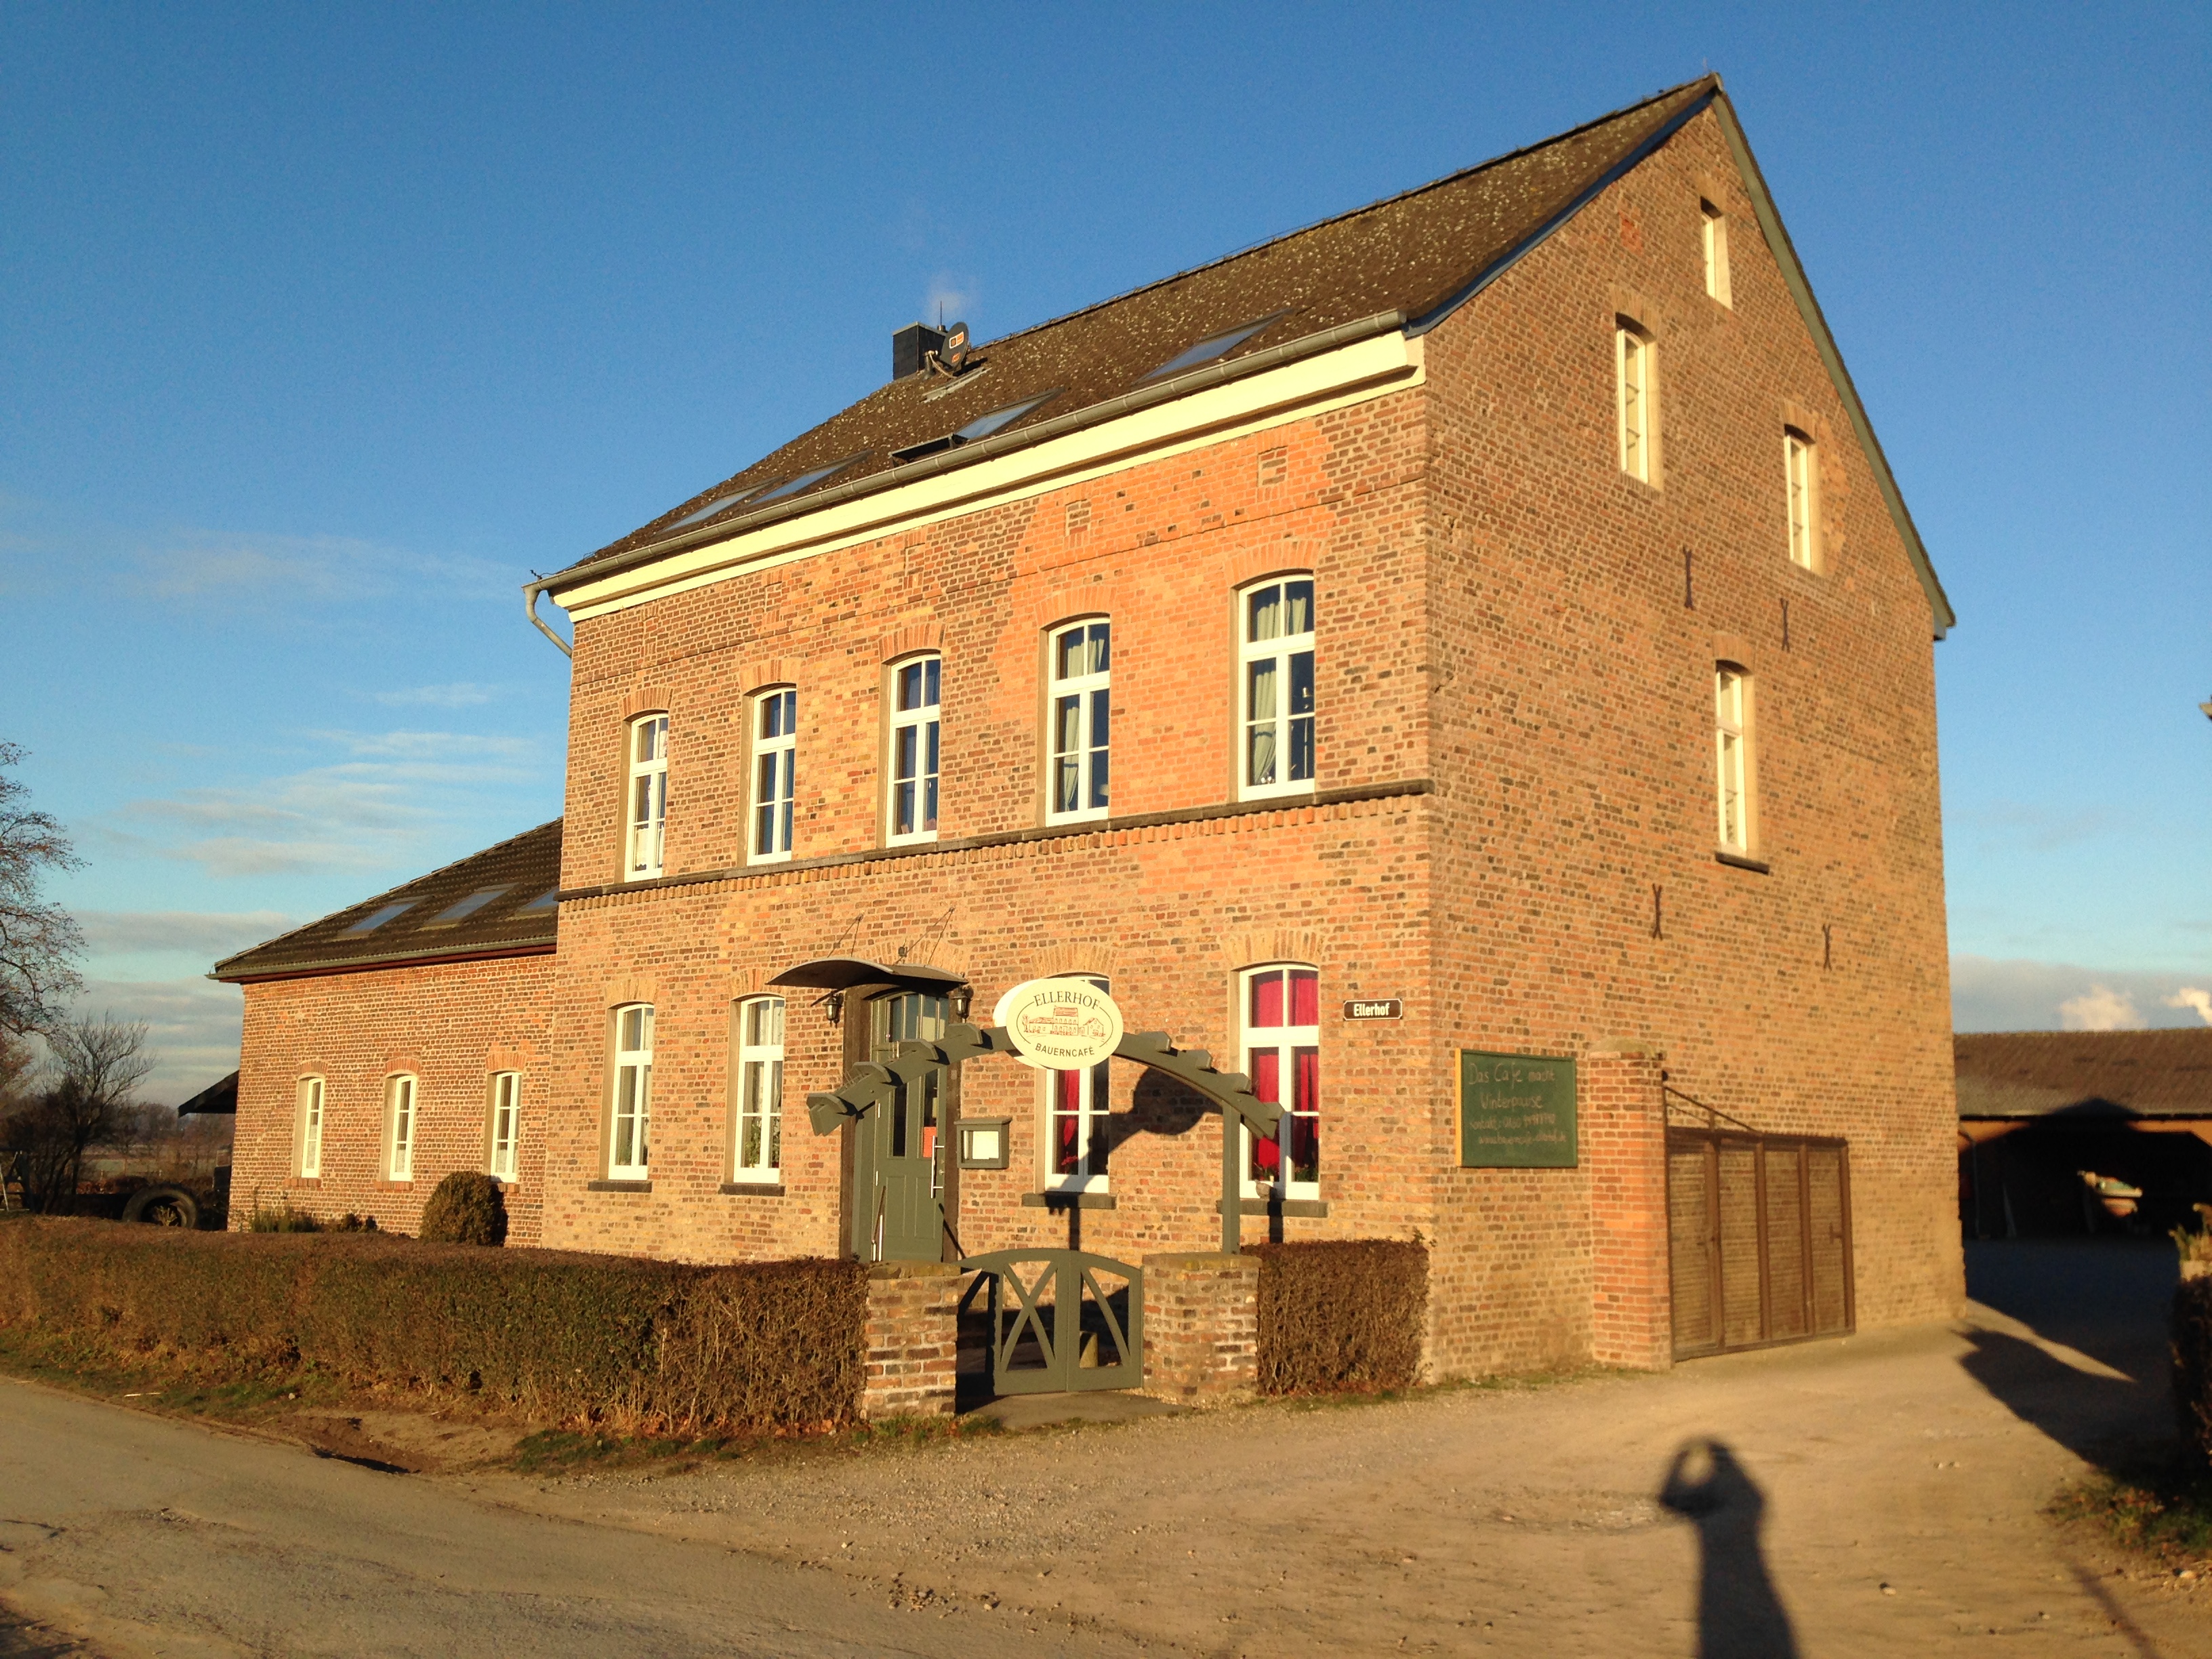 Bild 3 Bauerncafe Ellerhof Inh. Schaumlöffel Kerstin in Duisburg